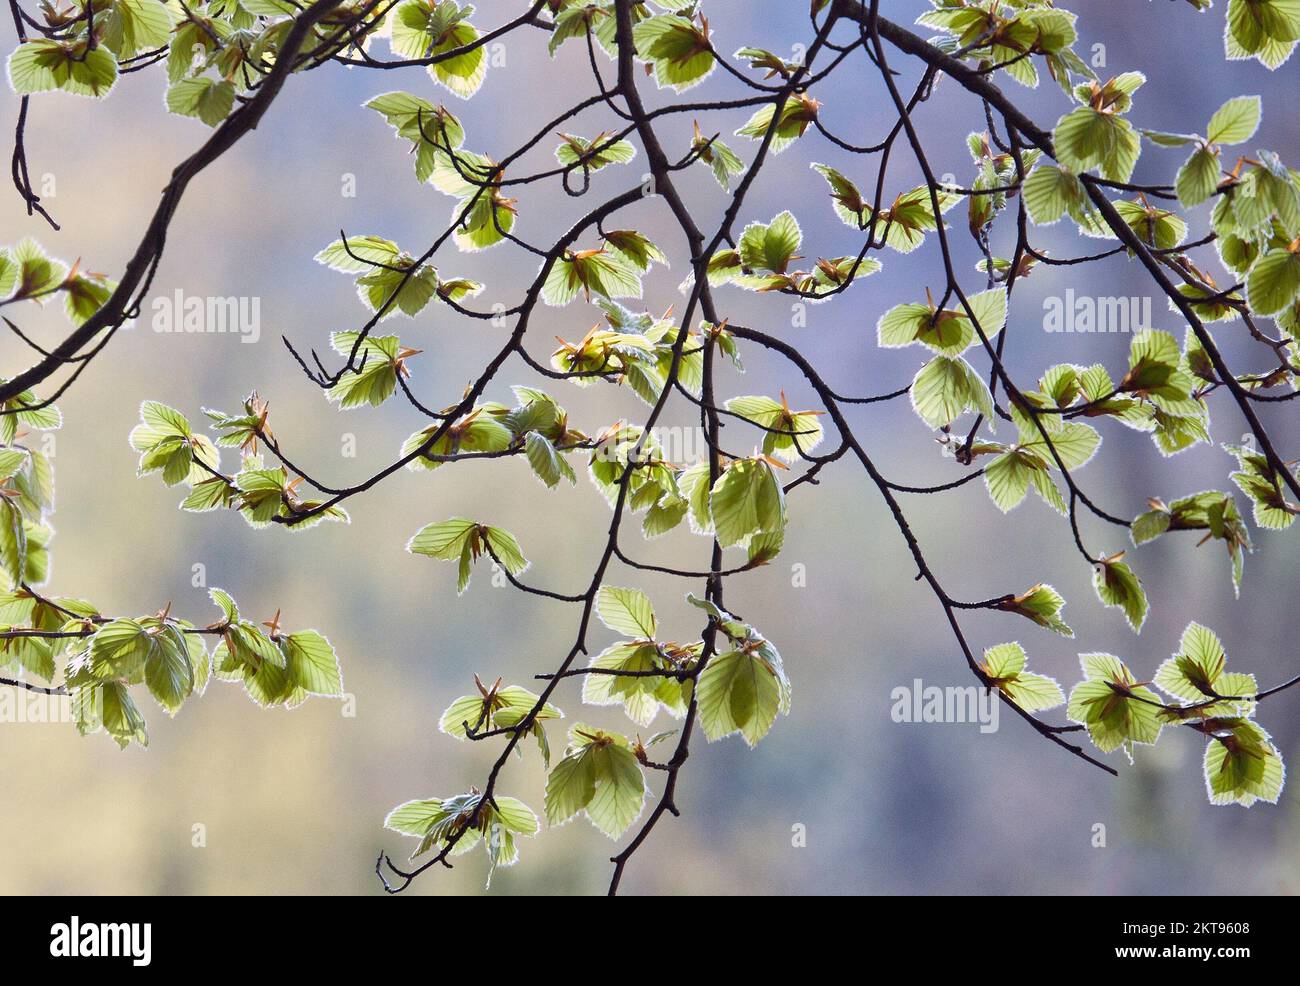 Bäume im Frühling zeigen Schönheit in der Natur mit auffälligen Mustern, Formen und Strukturen, mit einer Palette an lebendigen neuen Wachstums- und Frühlingsfarben, Stockfoto